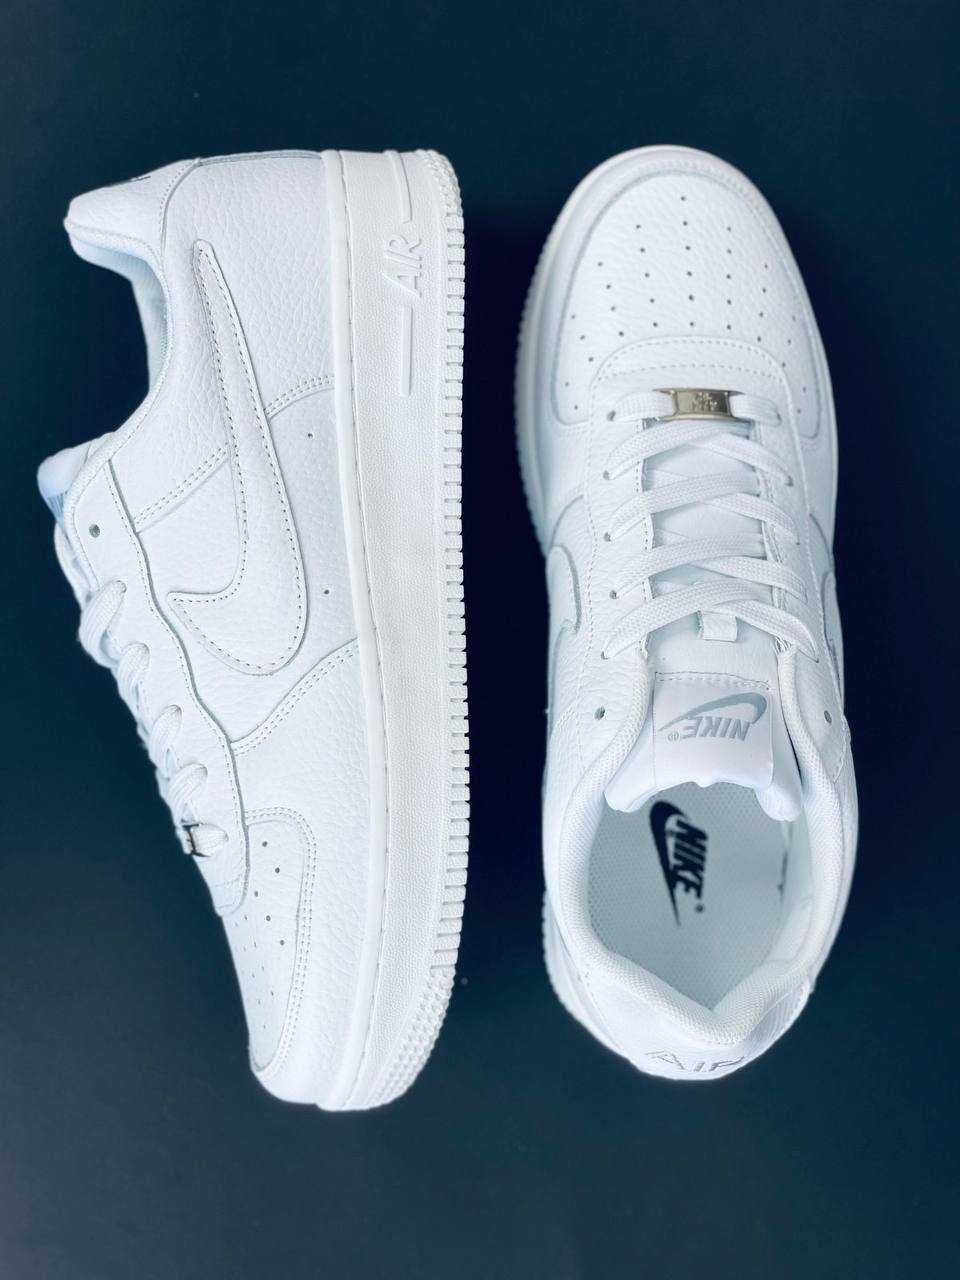 Nike Air Force 1 Мужские кроссовки белые кожаные красовки Найк Форс